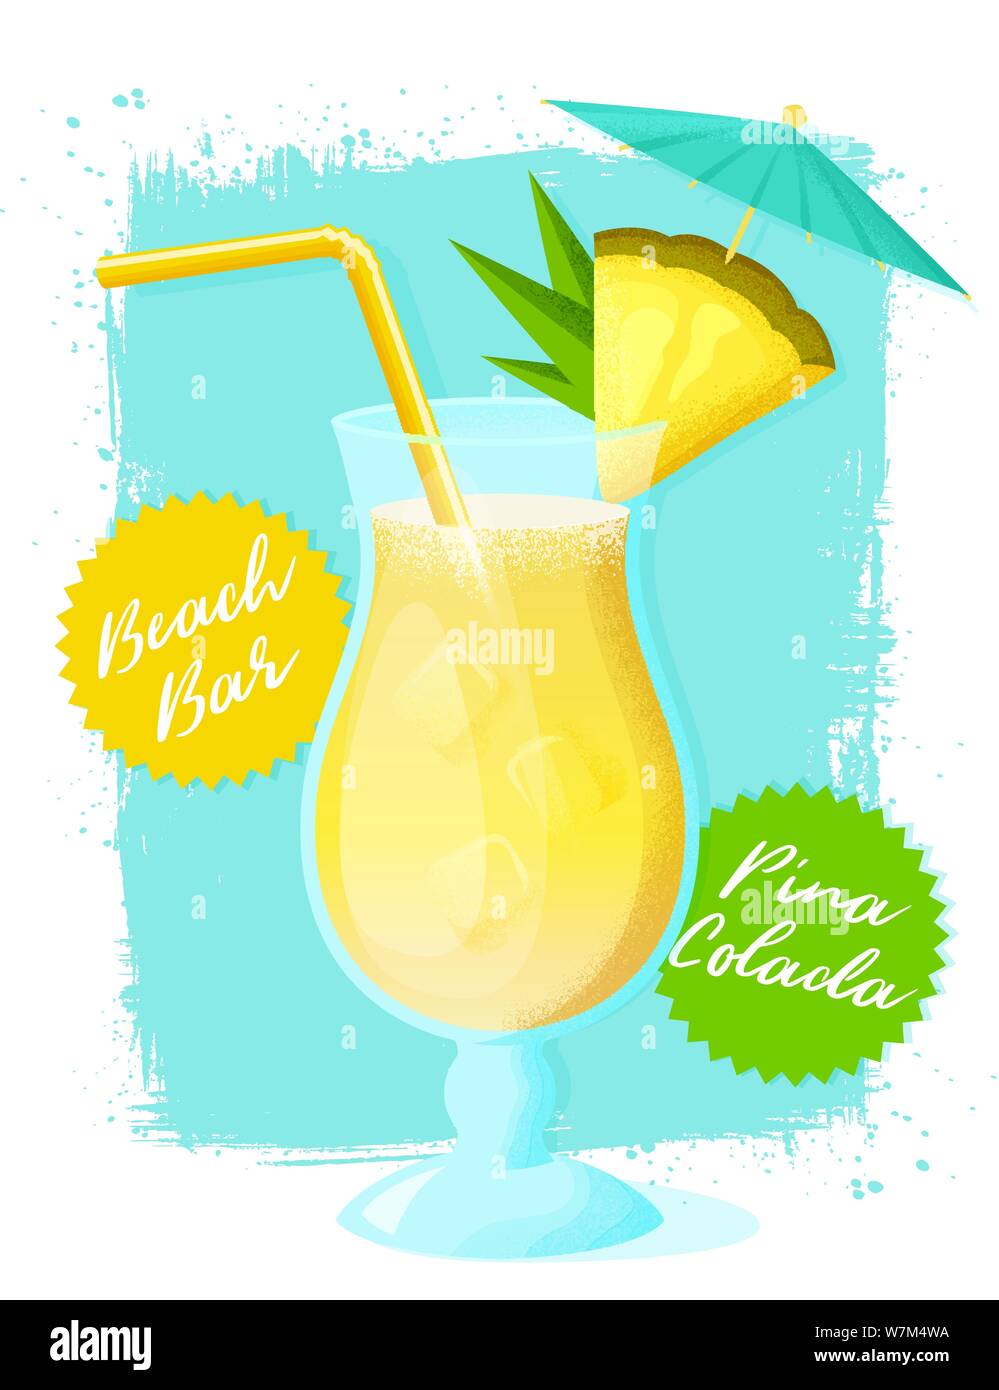 Cocktail Pina Colada à l'ananas tranche, la paille et le parapluie. Poster avec un verre de boisson alcoolisée sur grunge background. Vector illustration. Illustration de Vecteur